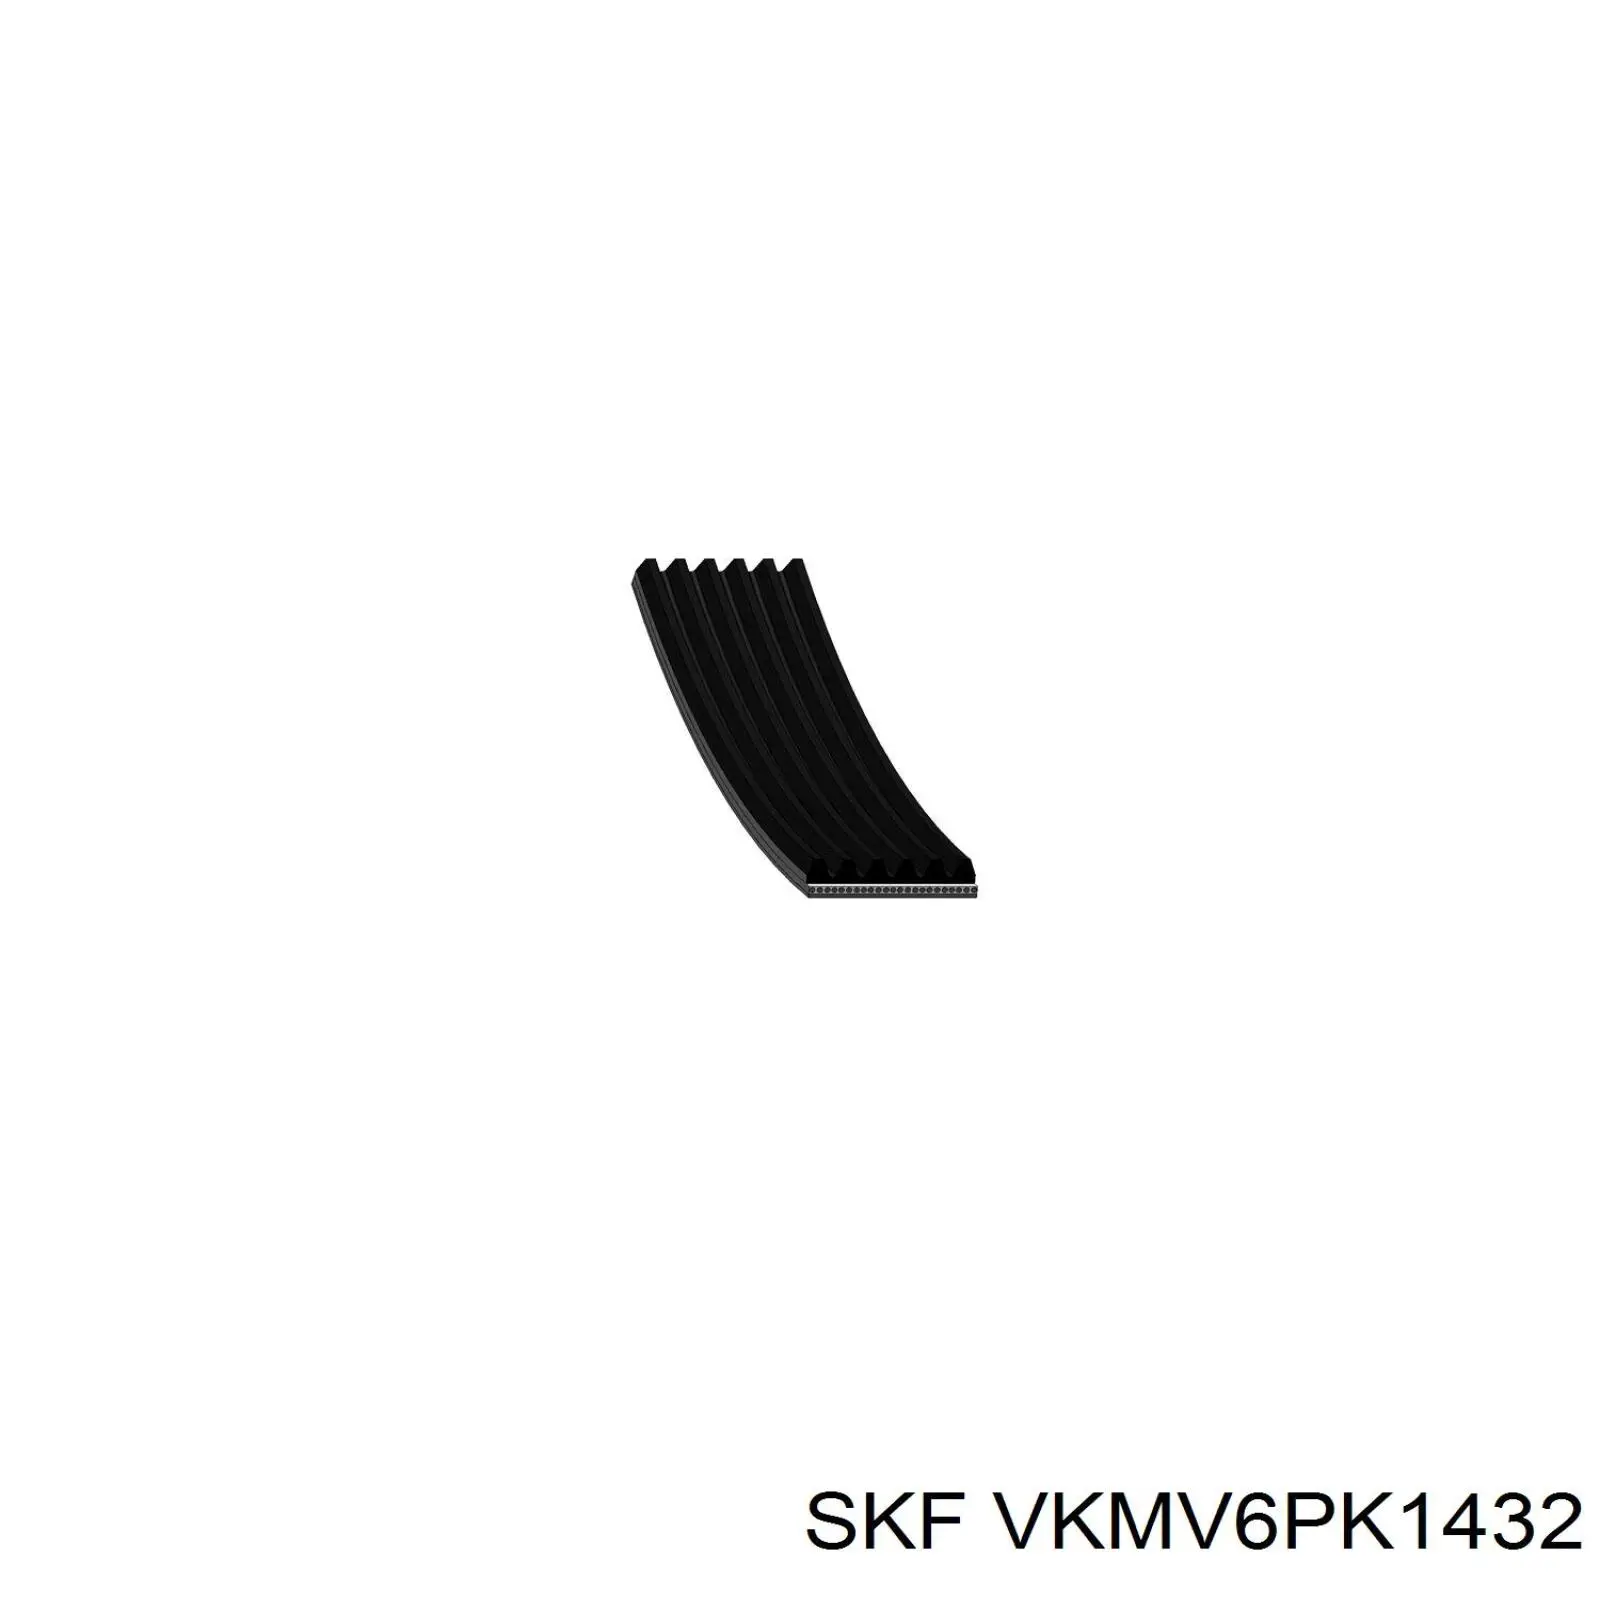 VKMV6PK1432 SKF correa trapezoidal